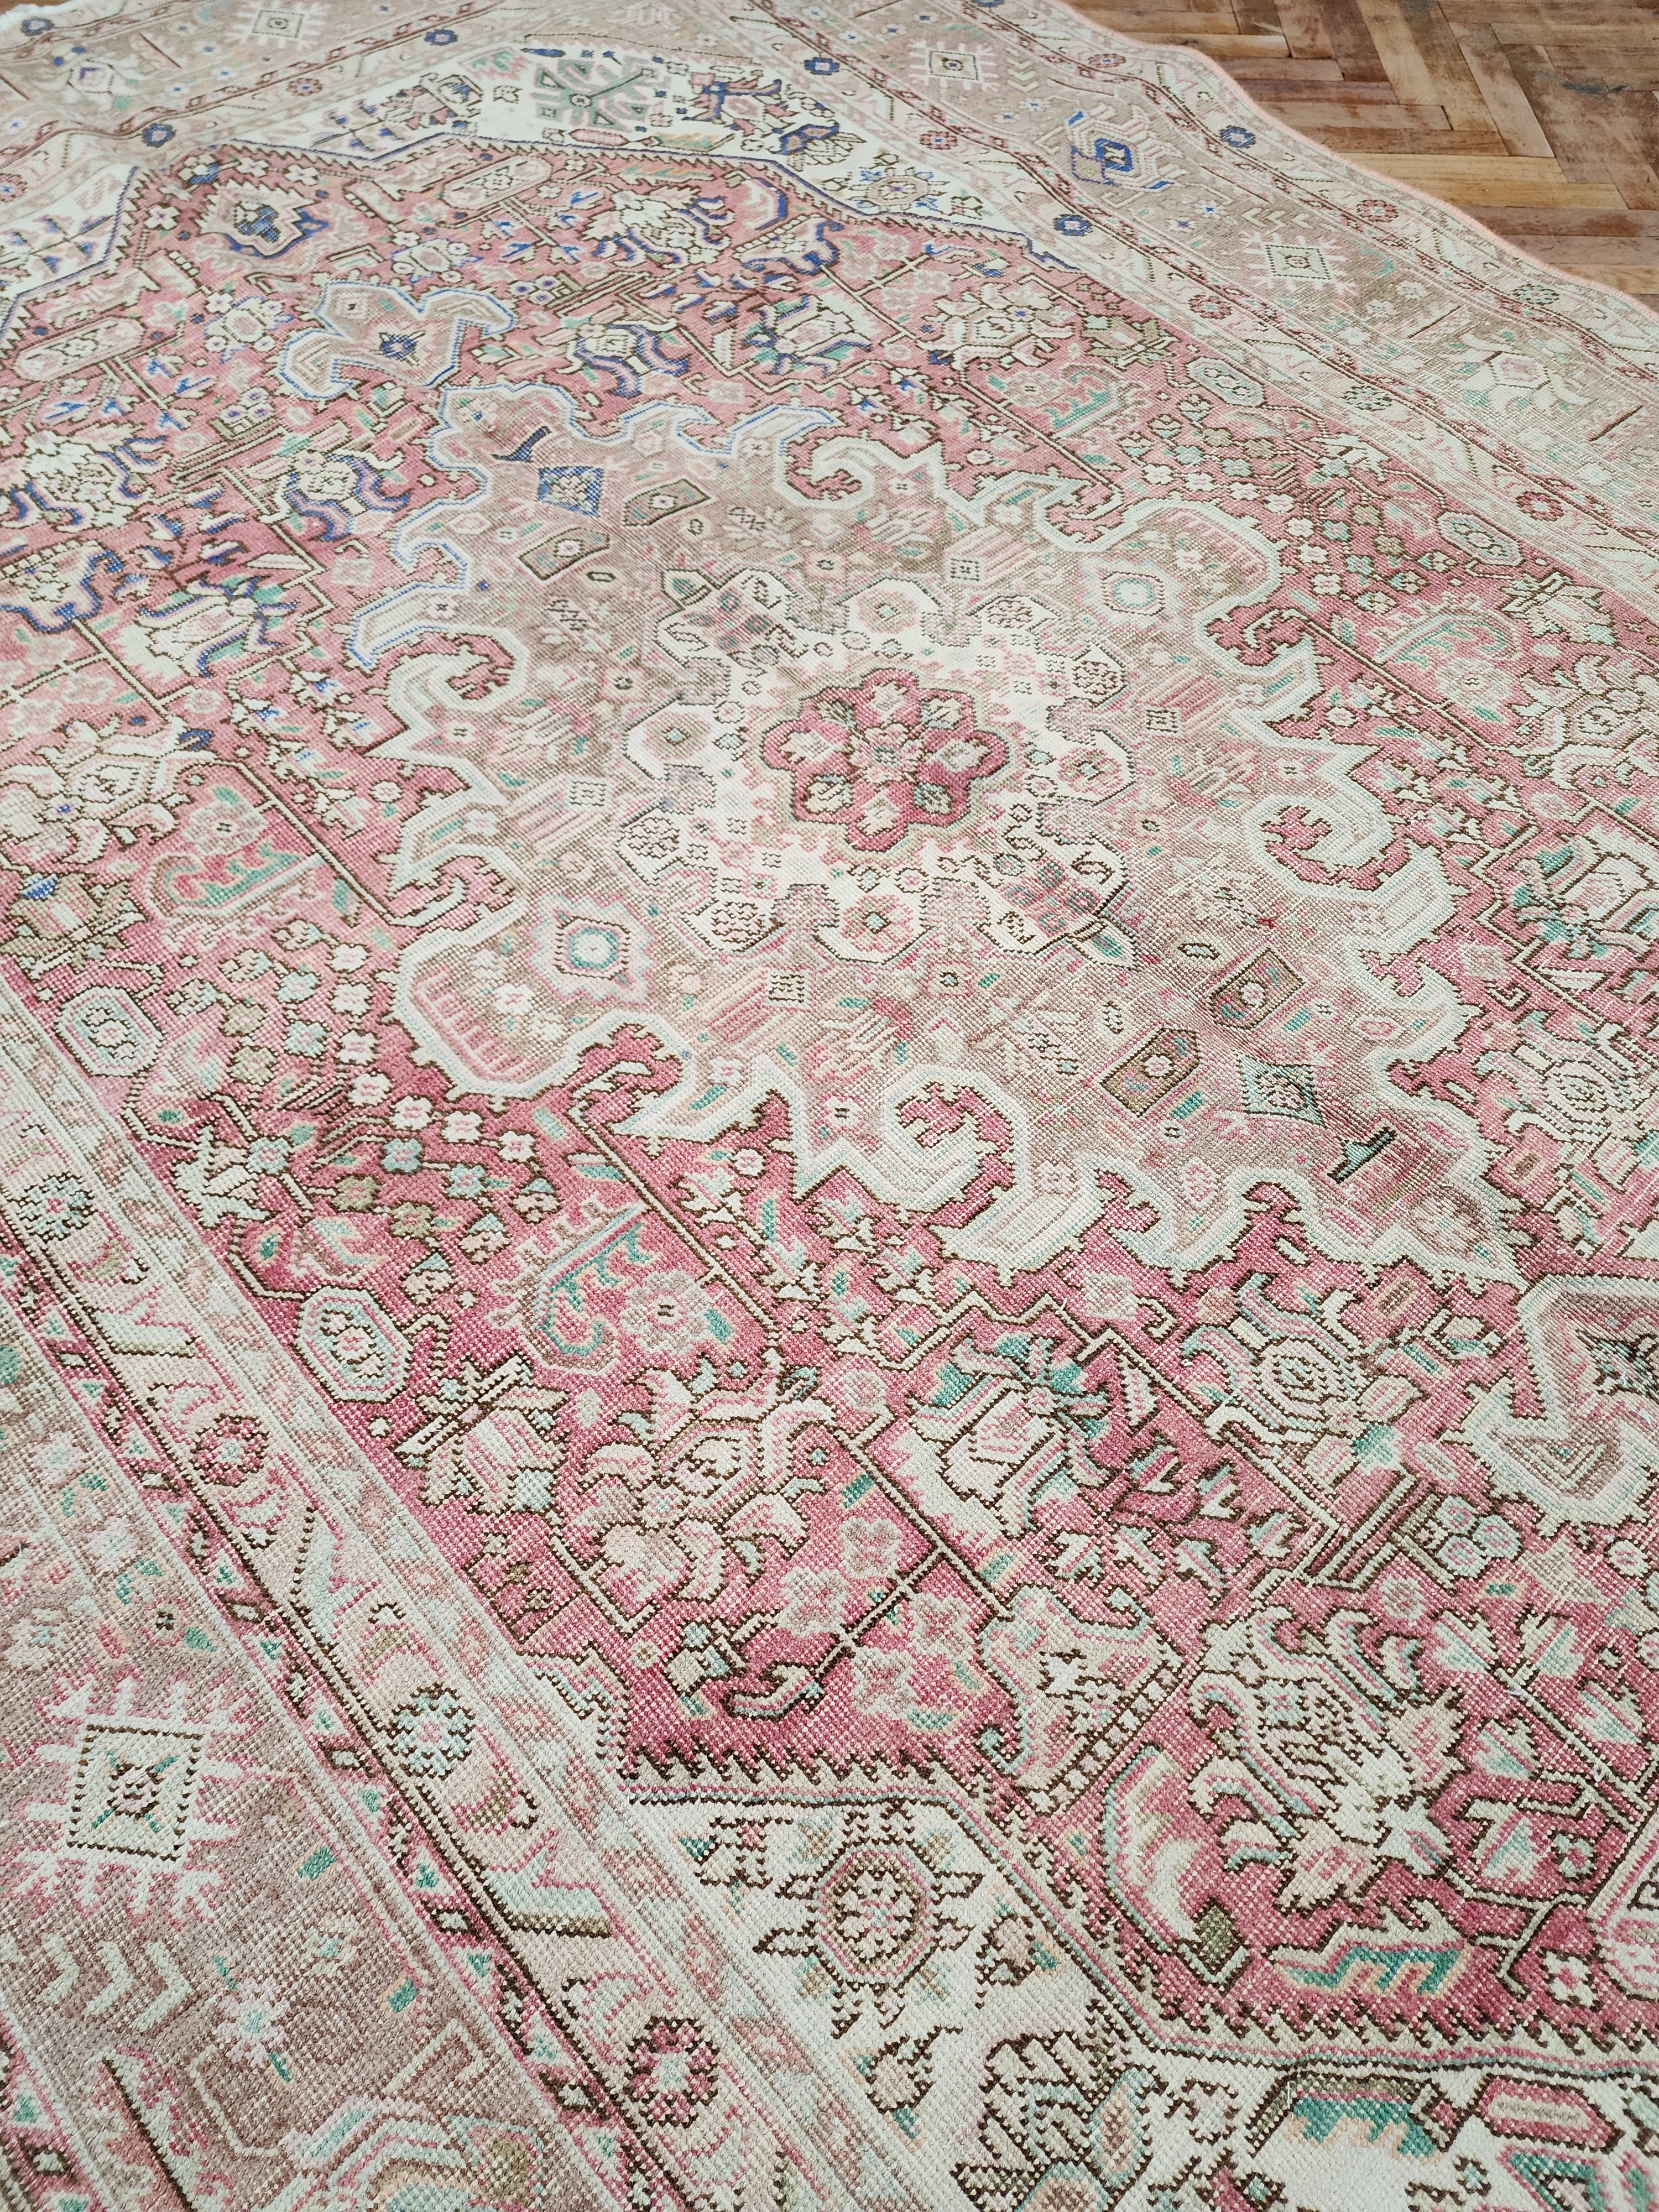 Vintage Persian Area Rug 9'5'' x ''6'' Vintage Turkish Tribal Natural Wool Rug, Recycled Oriental Design Rustic Bohemian Floor Rug, Carpet